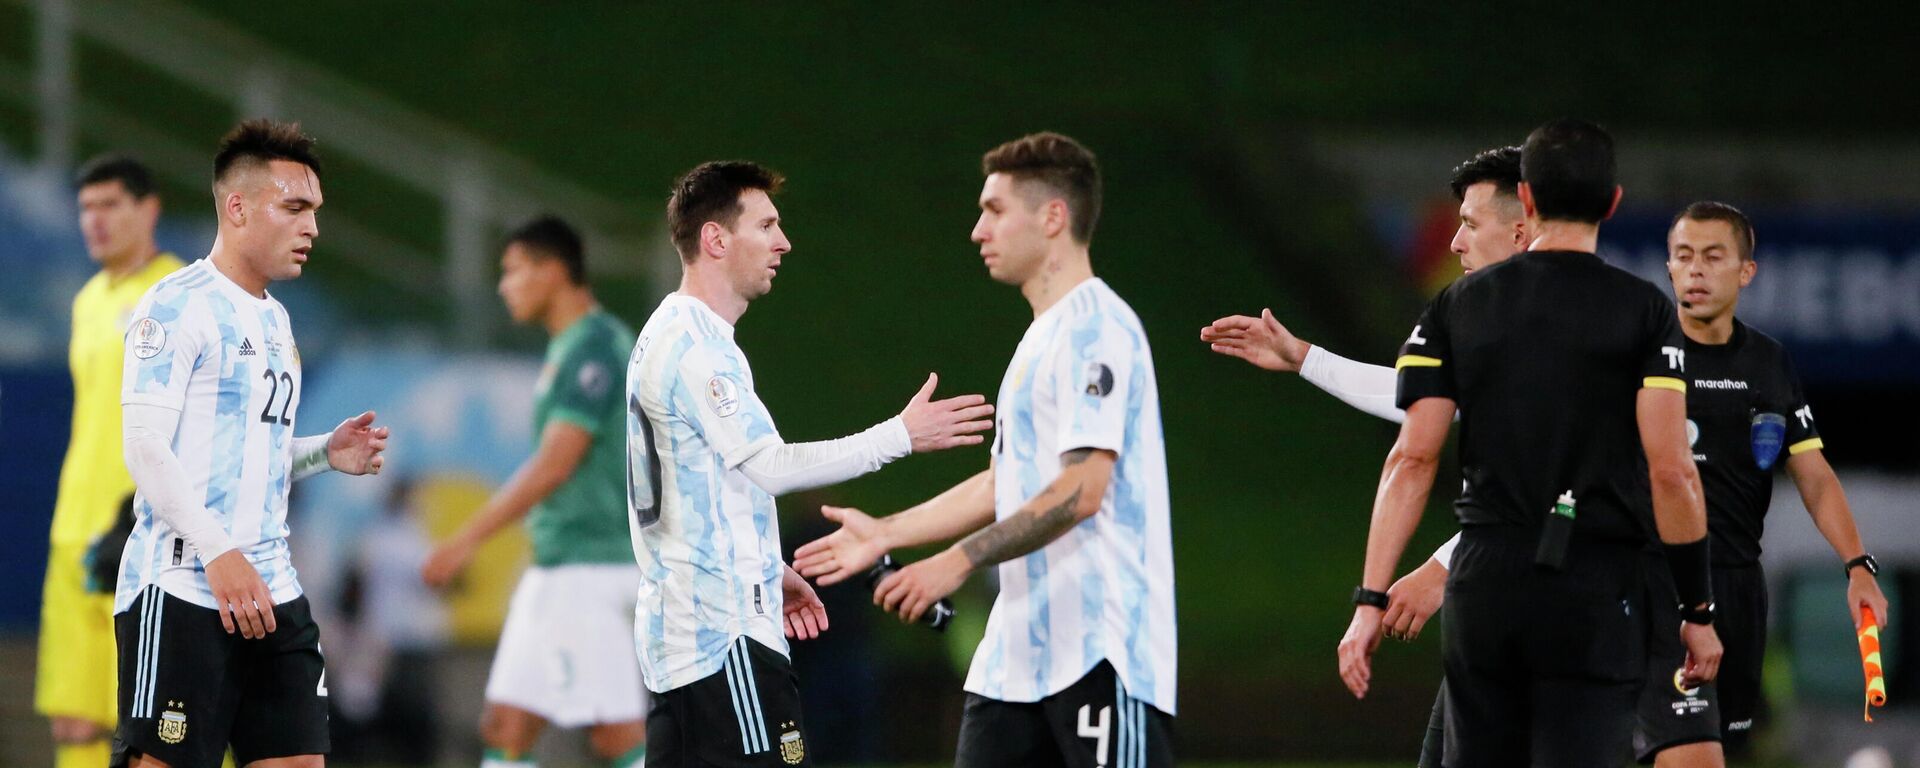 Lionel Messi y otros futbolistas de Argentina se saludan tras el partido frente a Bolivia - Sputnik Mundo, 1920, 29.06.2021